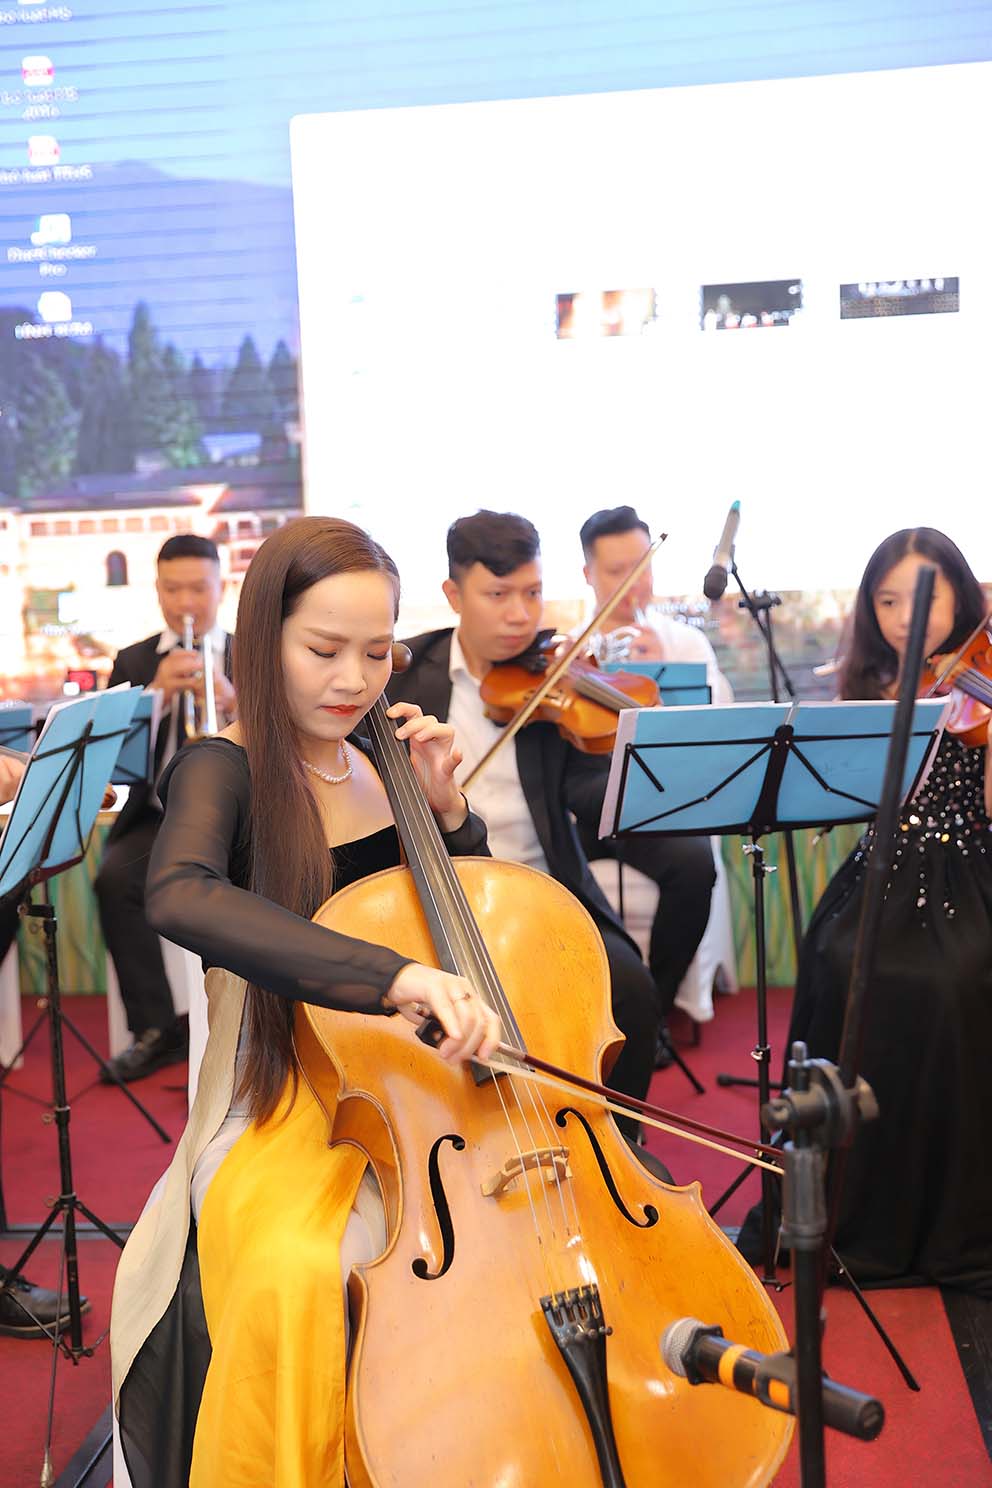 Cello Đinh Hoài Xuân “chơi ngông” mời dàn nhạc giao hưởng quốc tế về Việt Nam biểu diễn - Ảnh 1.